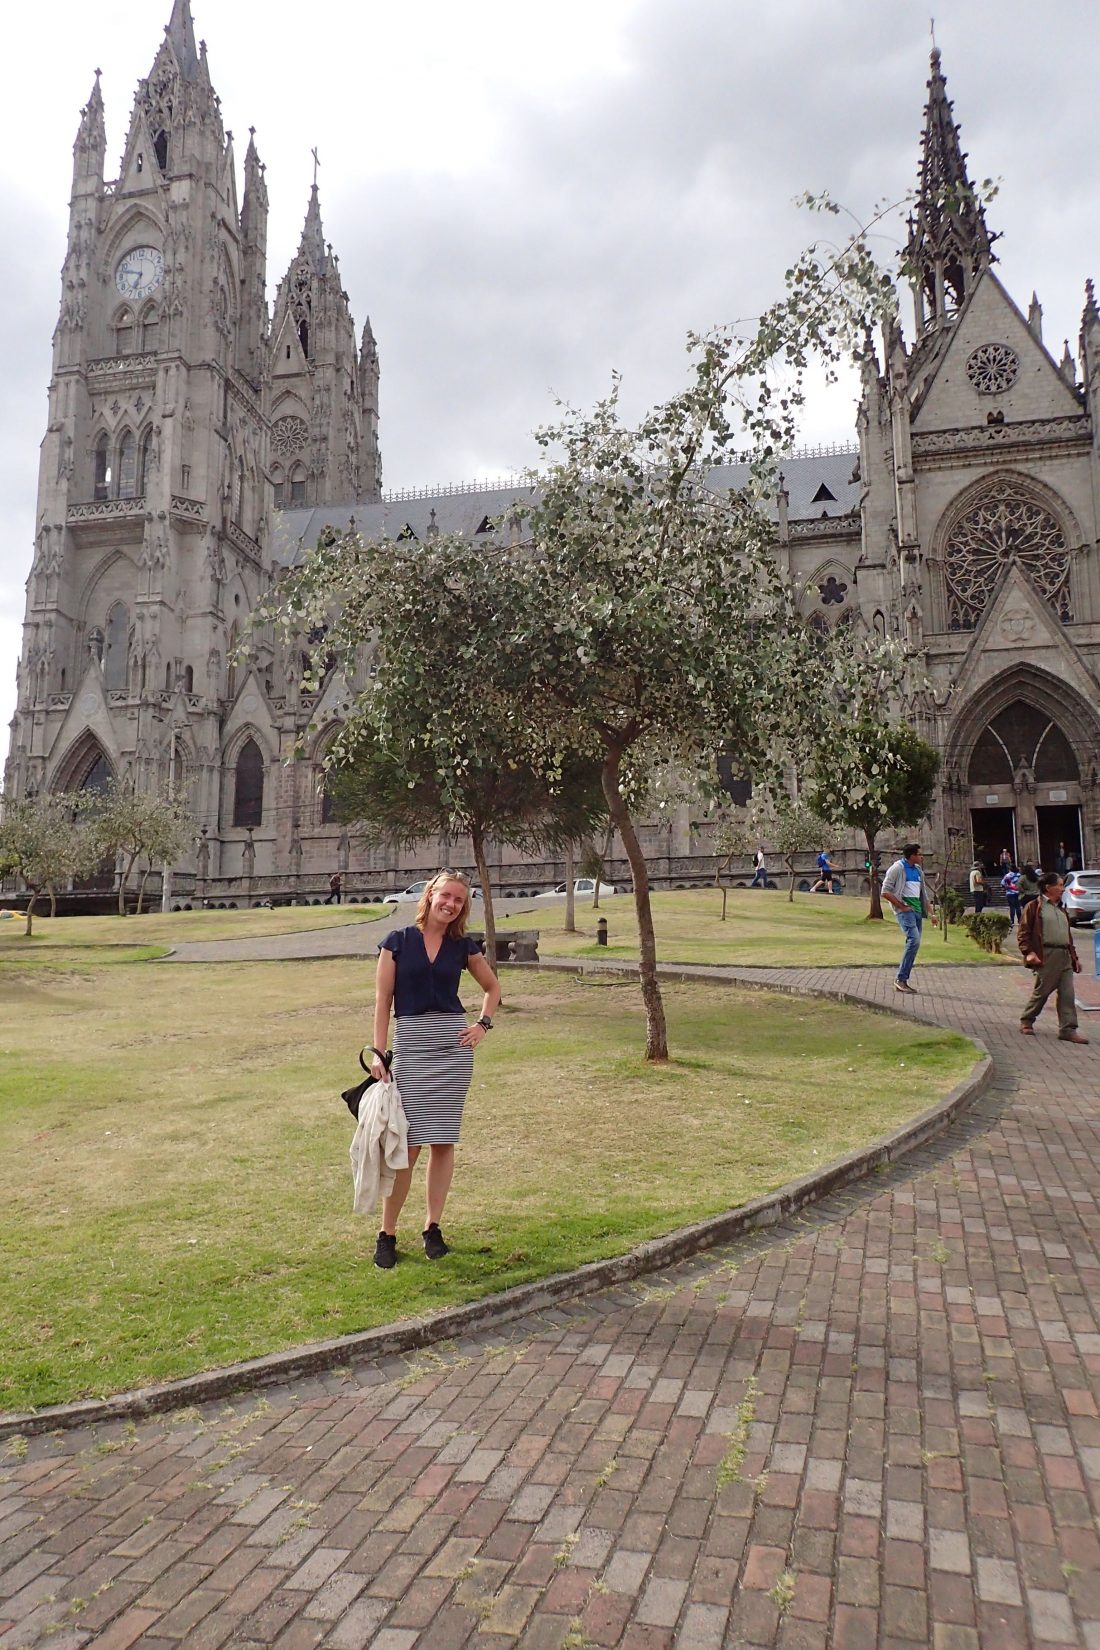 Kathedraal van Quito - Want ze hebben er echt meer dan alleen bergen en natuur - Wanderlotje 